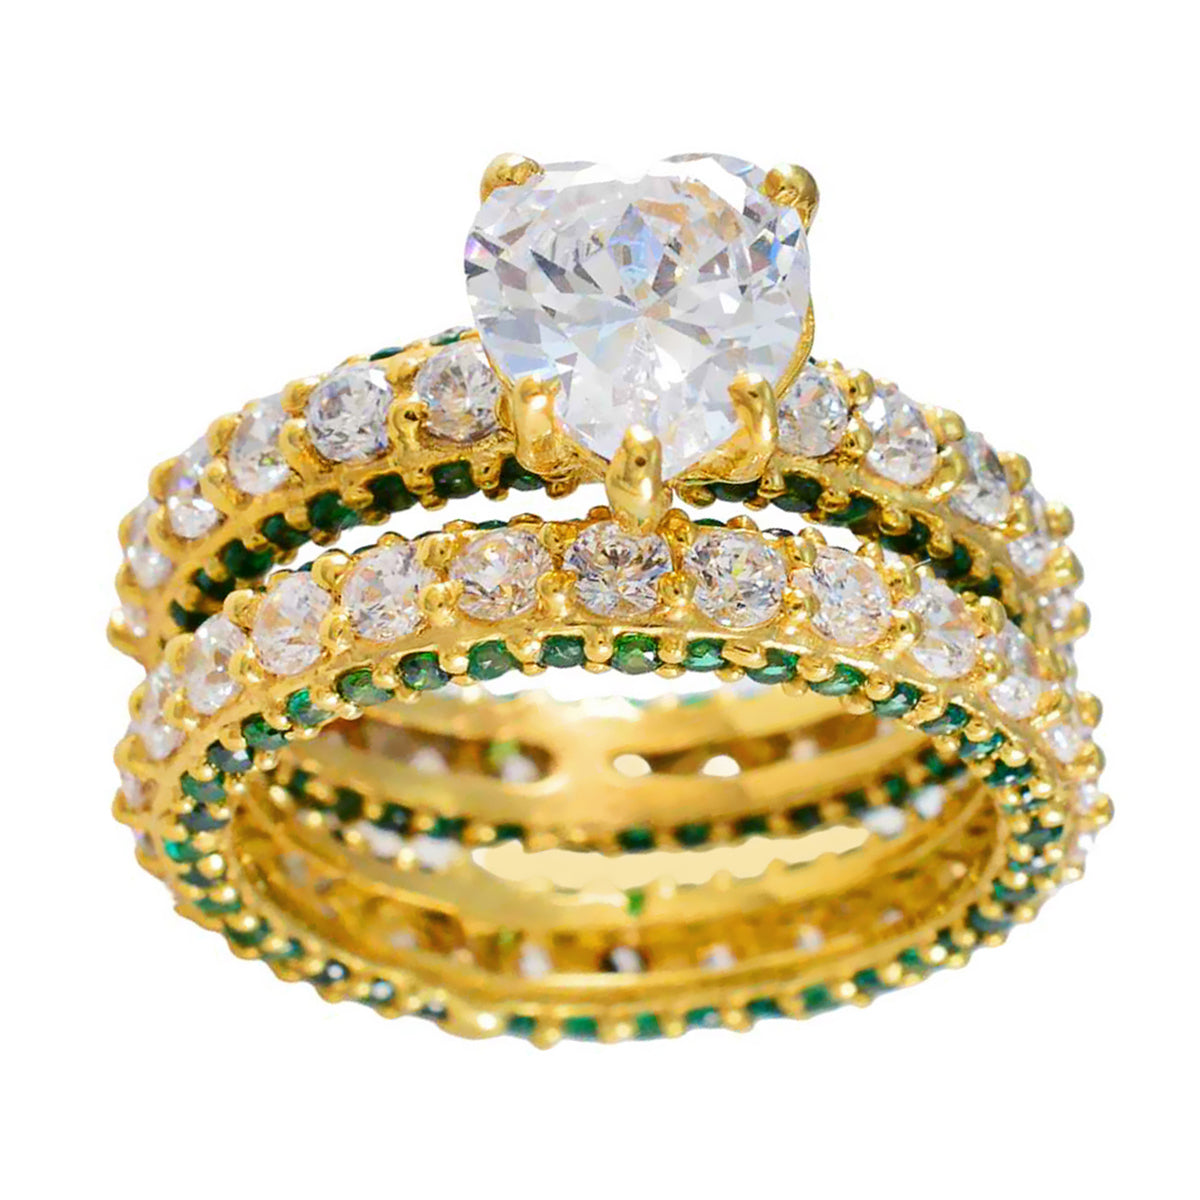 Riyo In Hoeveelheid Zilveren Ring Met Geel Goud Plating Smaragd CZ Steen Hartvorm Prong Setting Mode-sieraden Pasen Ring